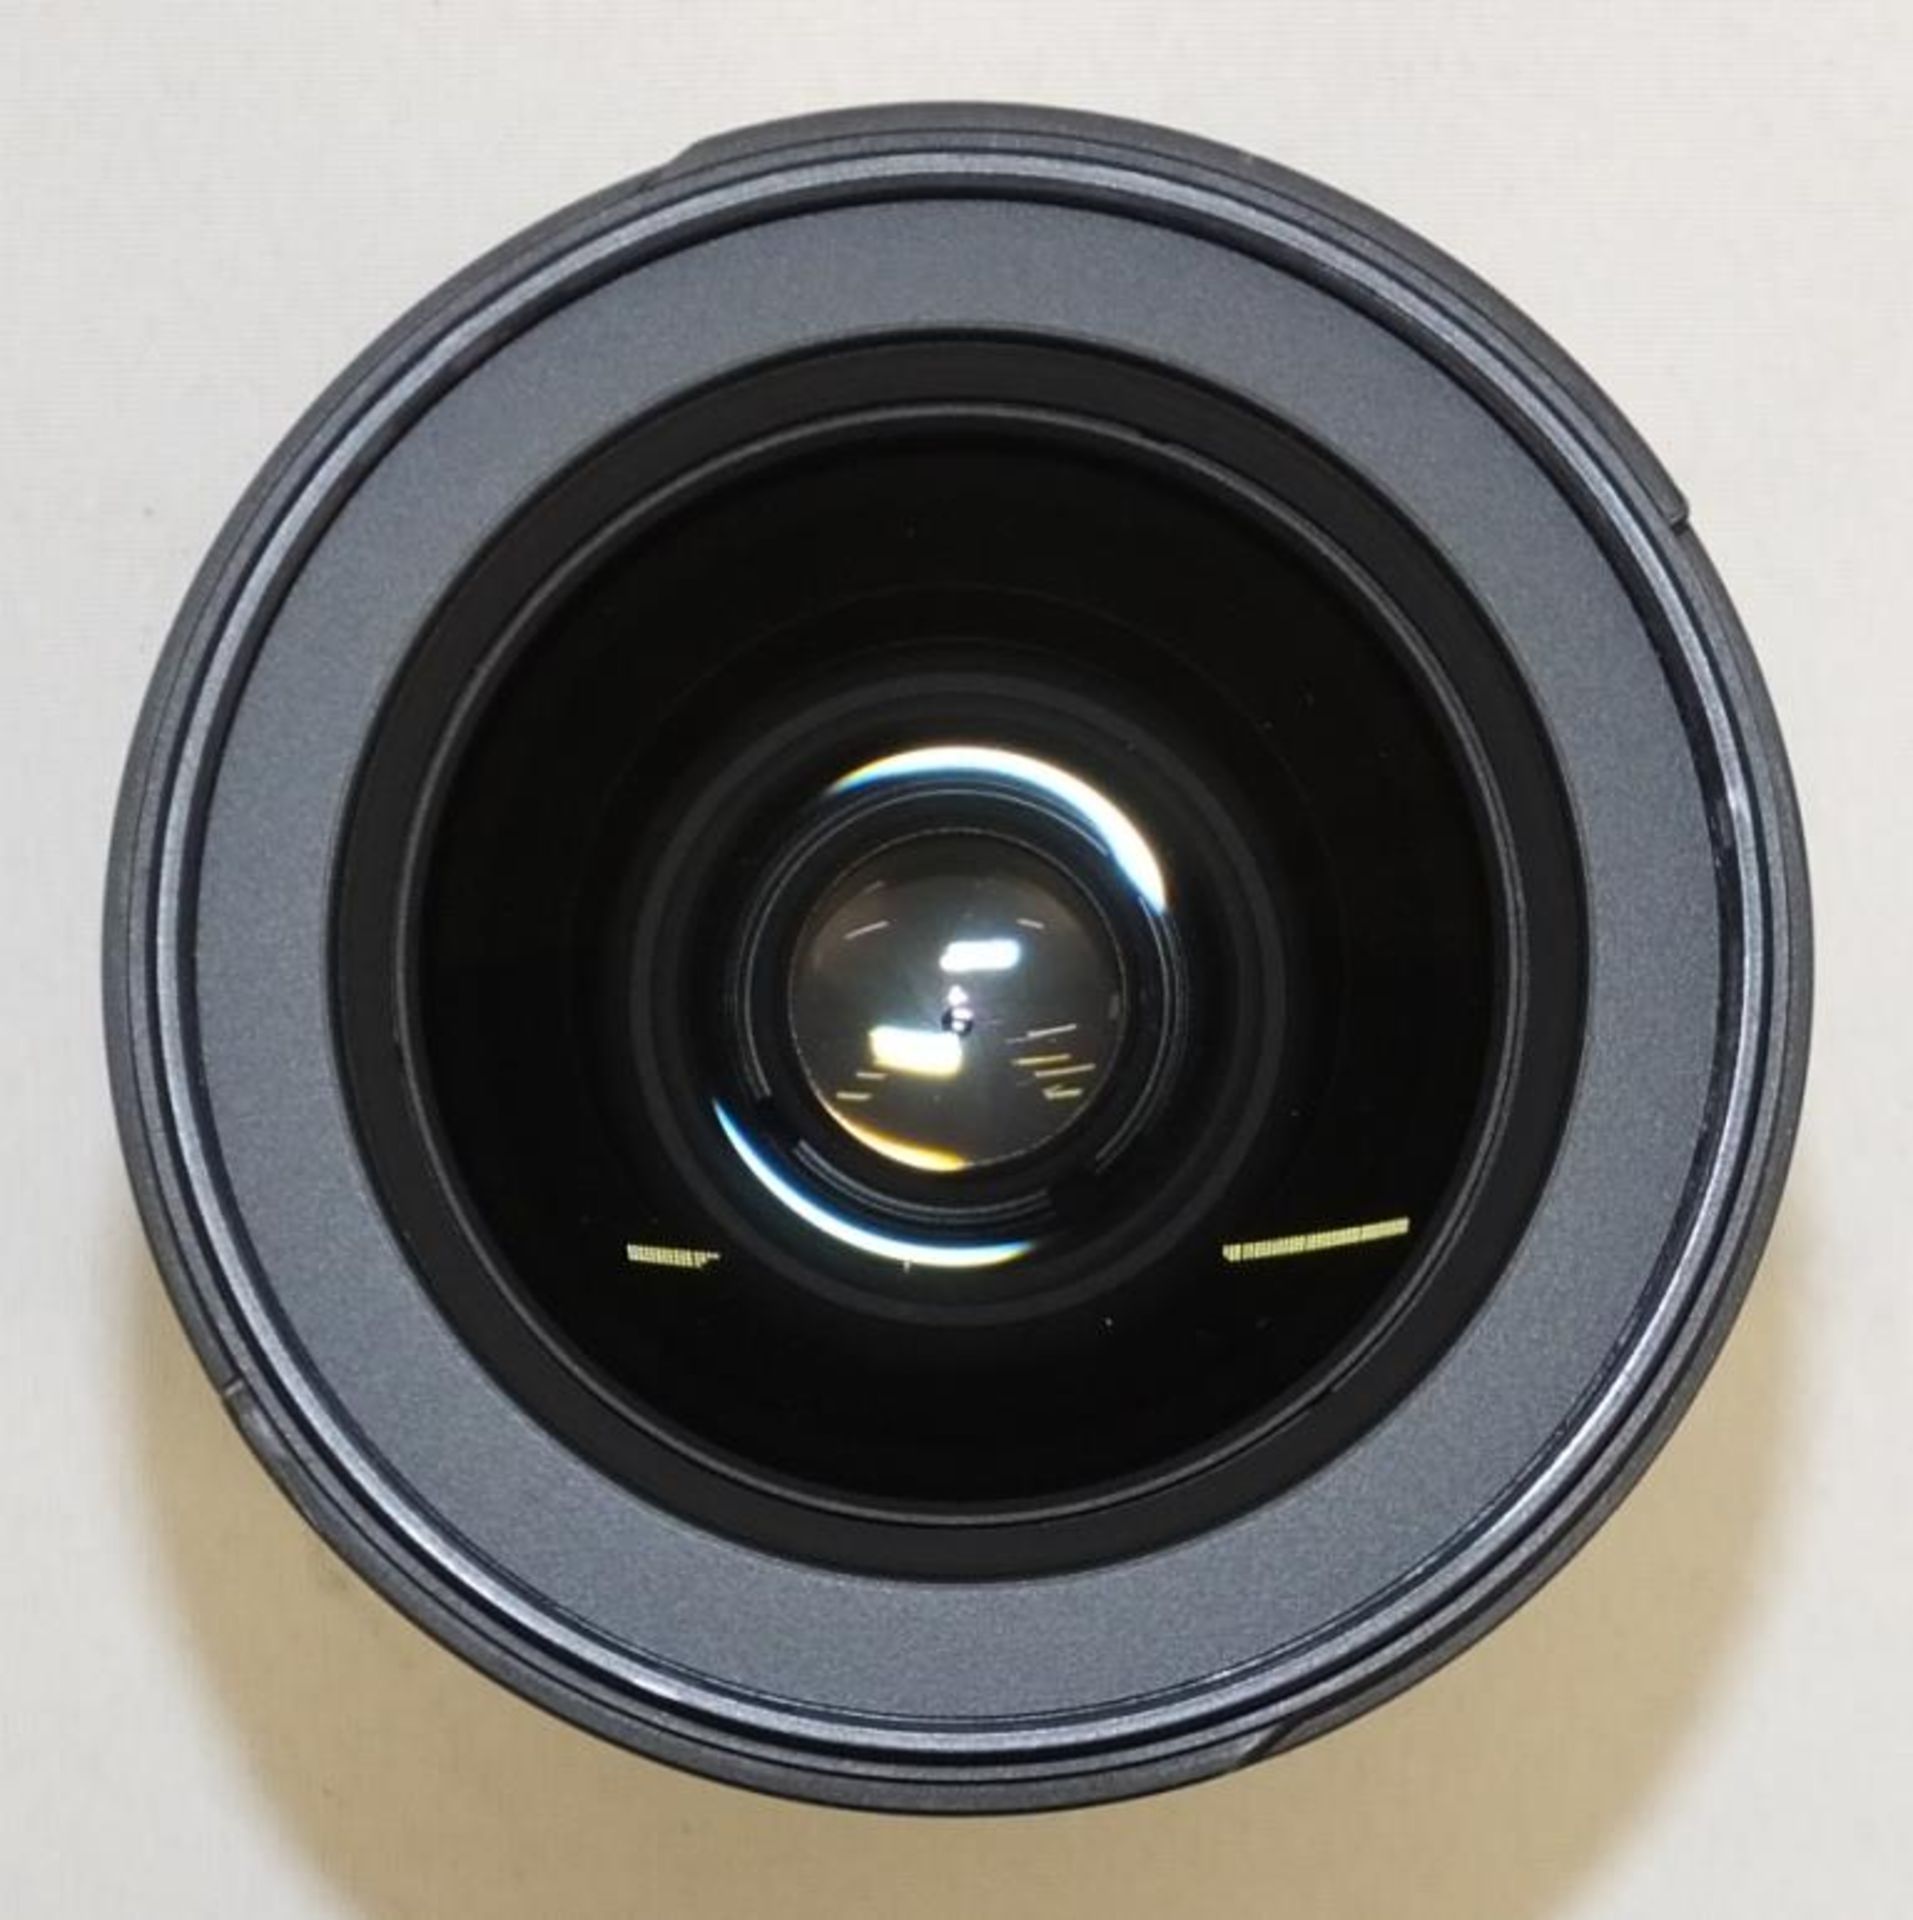 Nikon DX AF-S Nikkor 17-55mm 1:2.8 G ED Lens - Serial No. - 332048 with Nikon HB-31 Lens Hood - Image 5 of 7